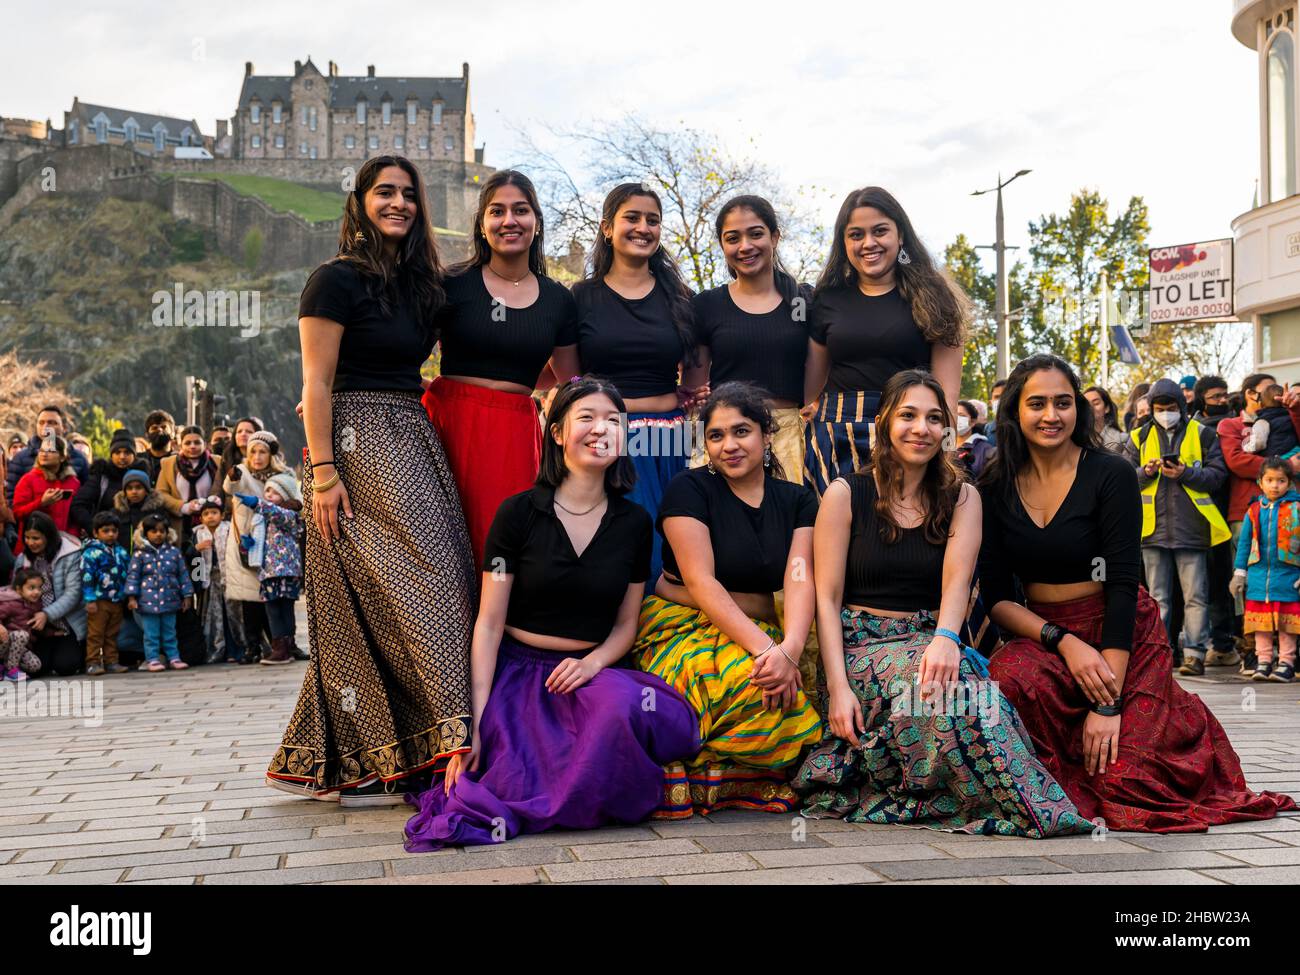 Indische Tanzgruppe posiert für Foto auf Diwali Festival Veranstaltung mit Edinburgh Castle Kulisse, Edinburgh, Schottland, Großbritannien Stockfoto